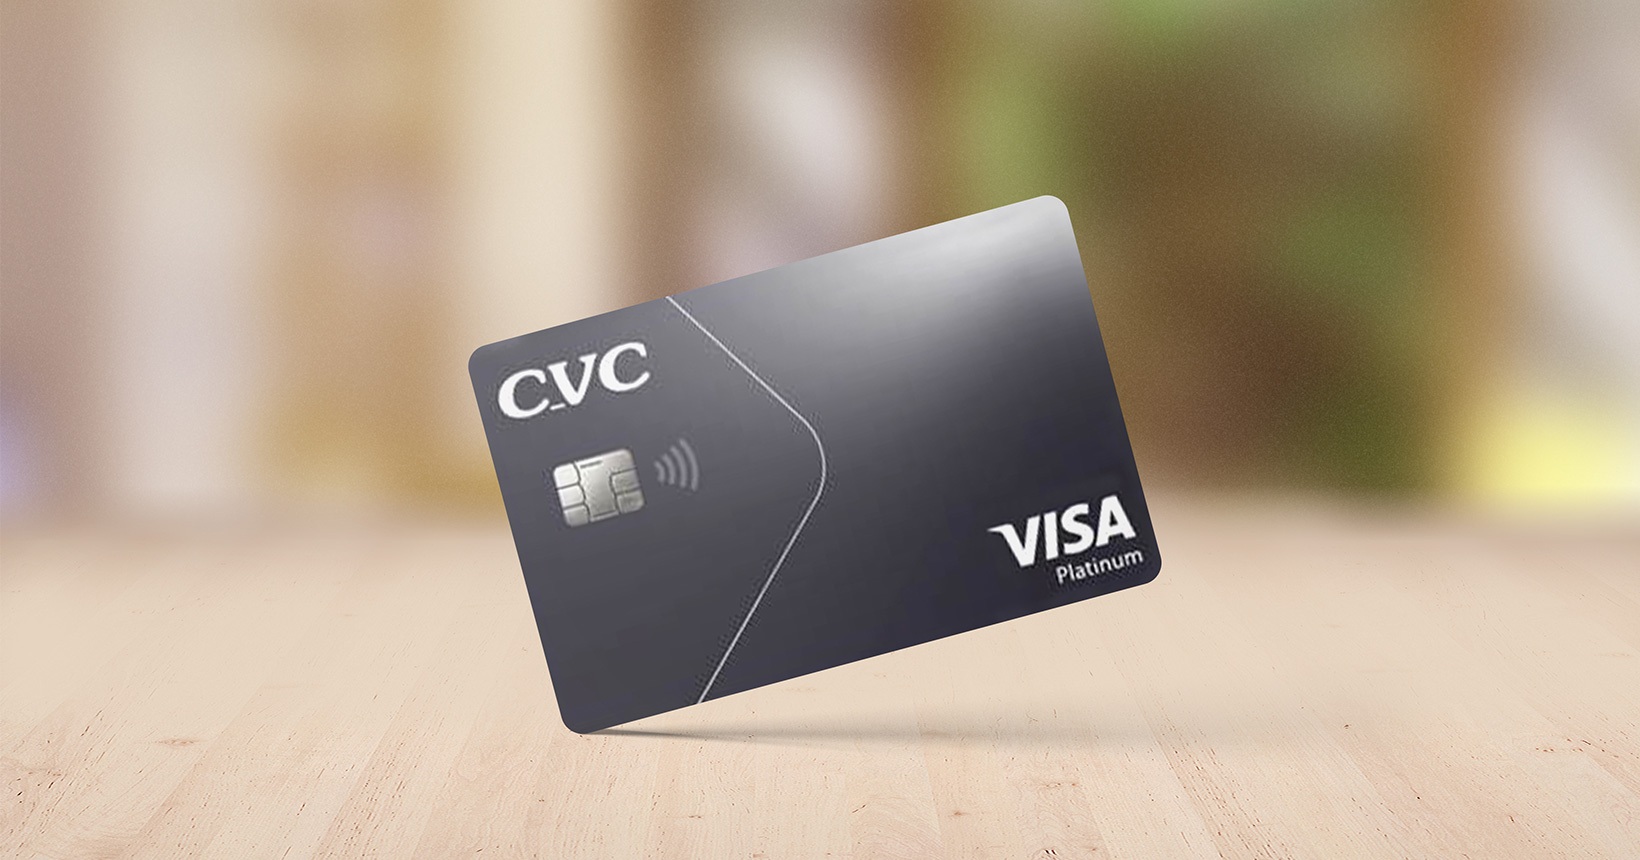 cvc itaucard visa platinum